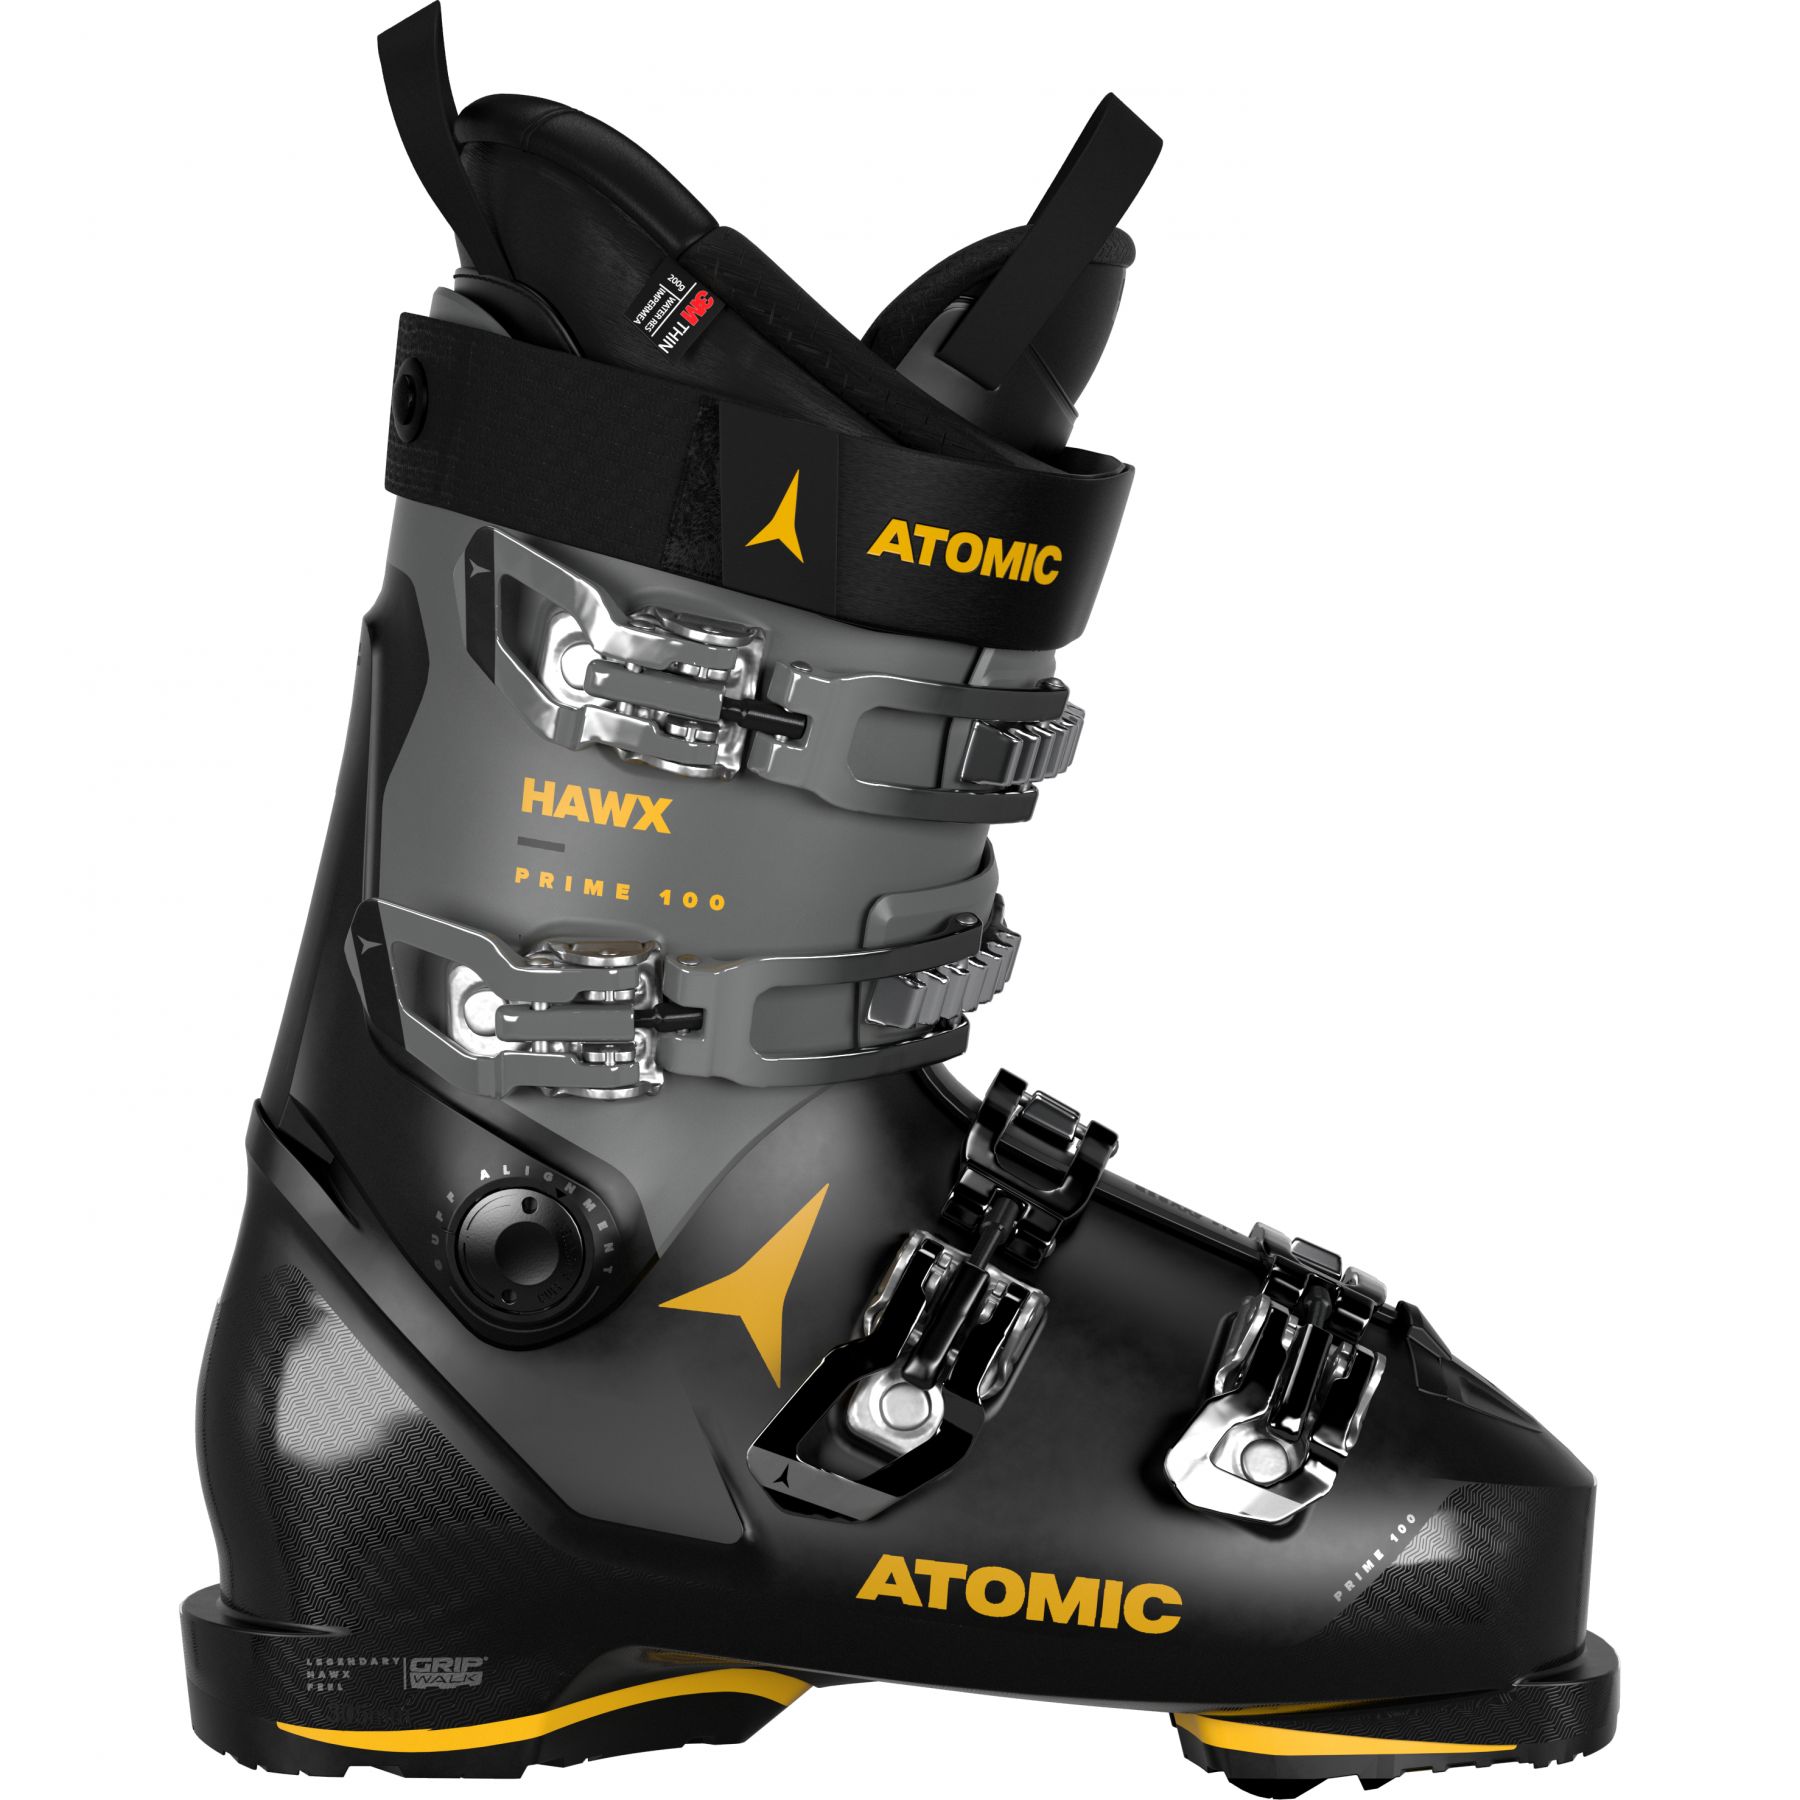 Billede af Atomic Hawx Prime 100 GW, skistøvler, sort/grå/gul